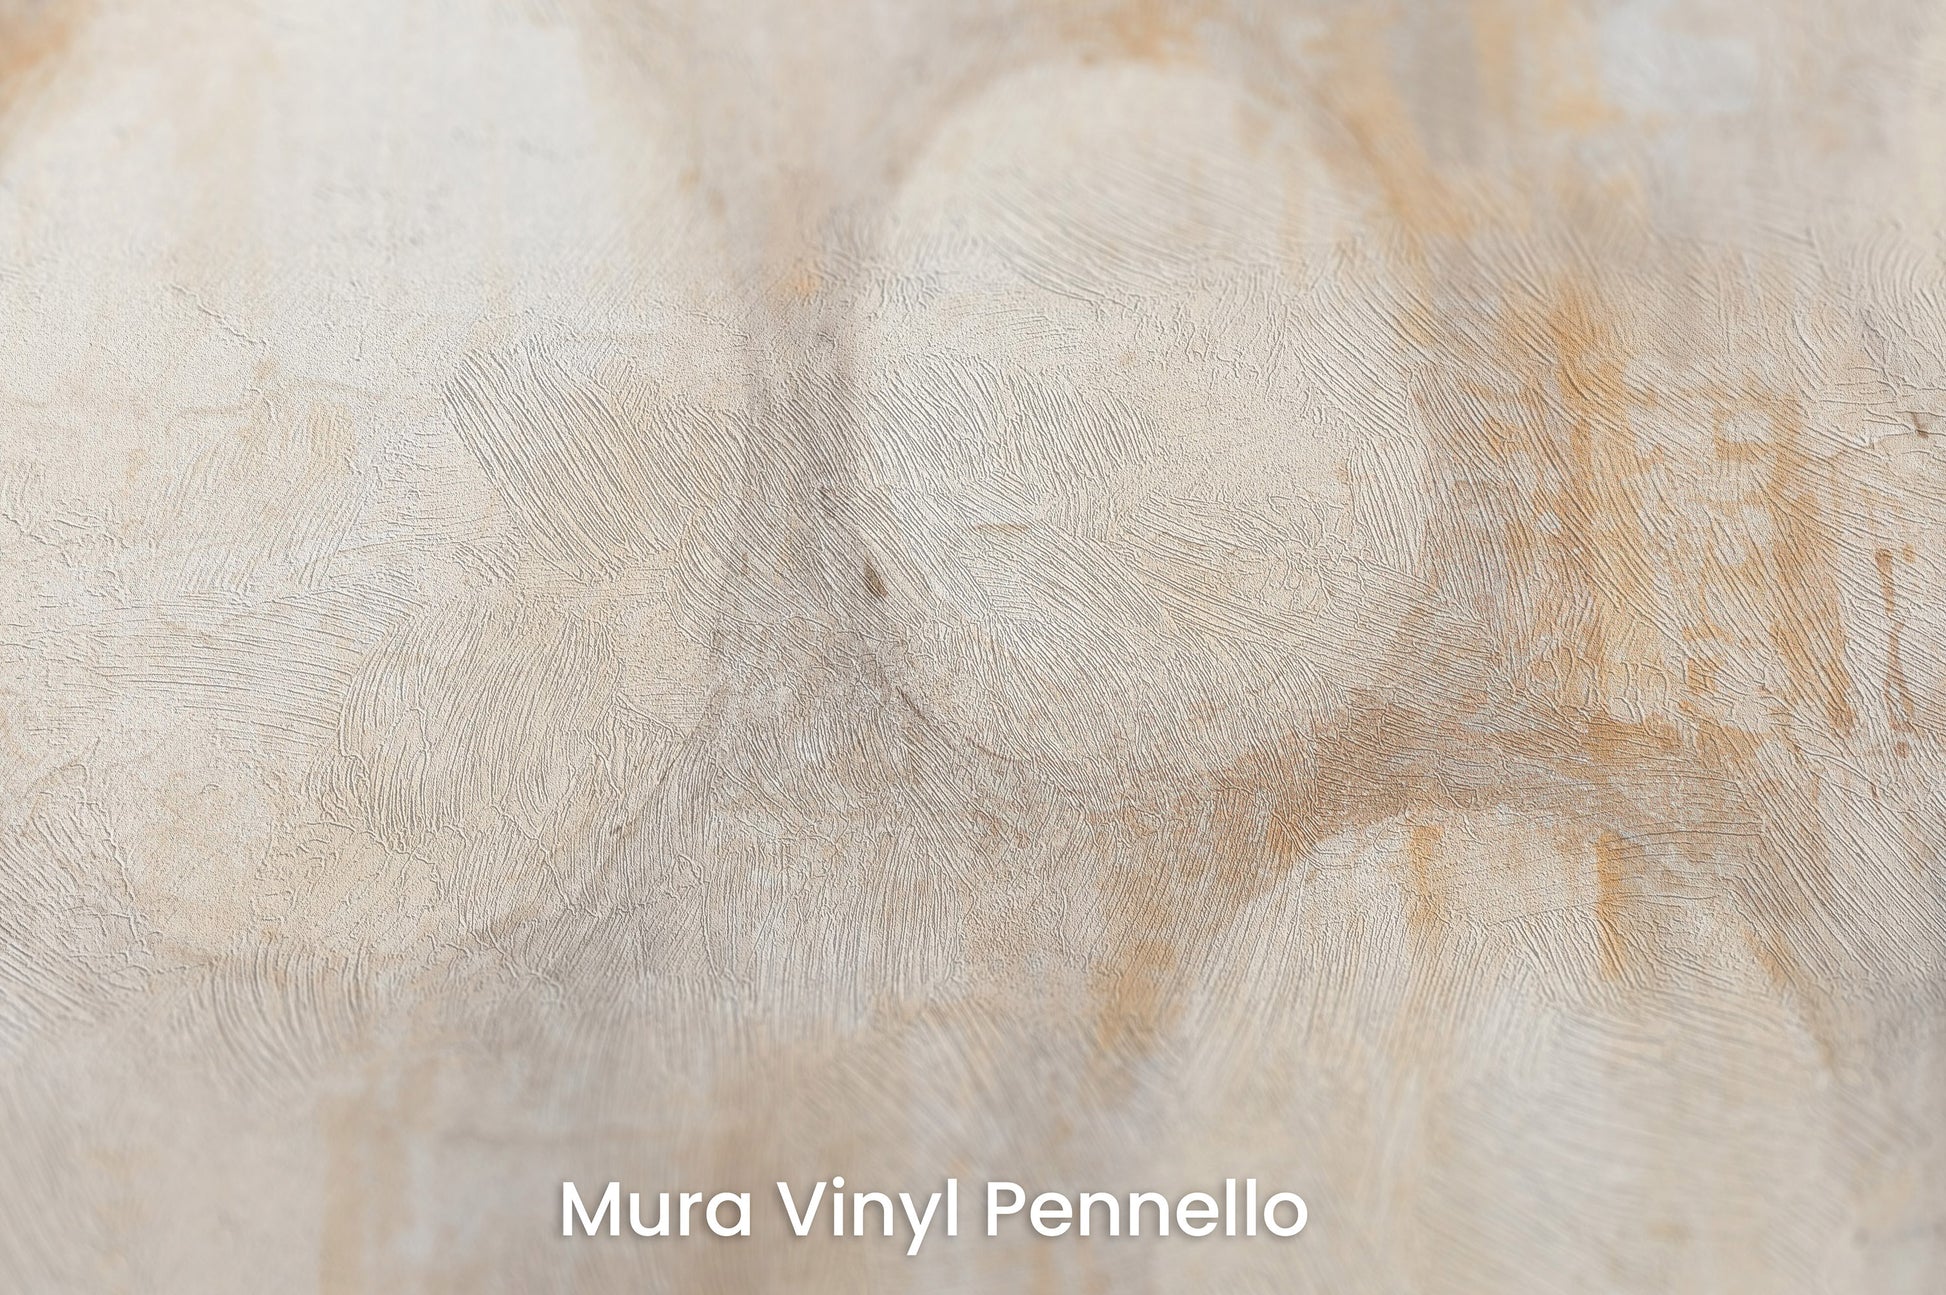 Zbliżenie na artystyczną fototapetę o nazwie TRANQUIL CIRCLES na podłożu Mura Vinyl Pennello - faktura pociągnięć pędzla malarskiego.